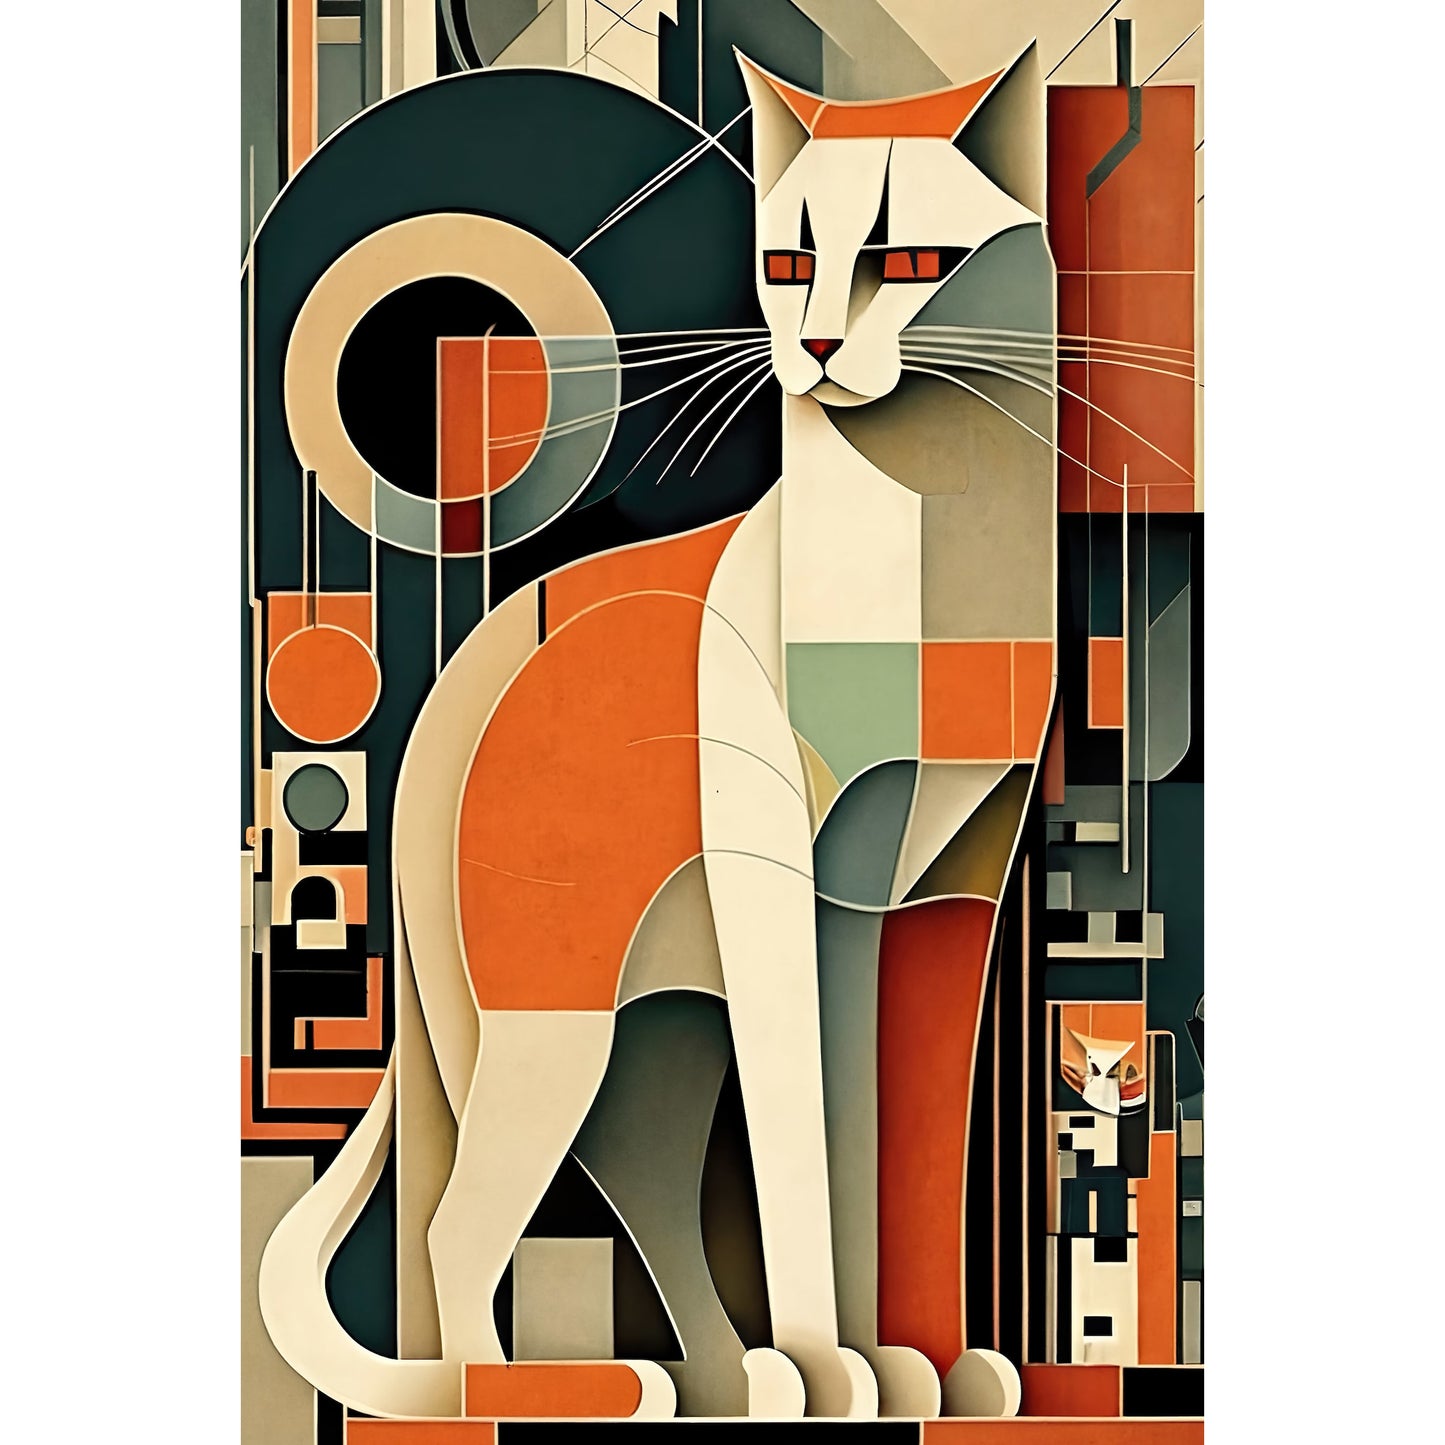 Abstract Cat Modern Wall Art Poster (3)